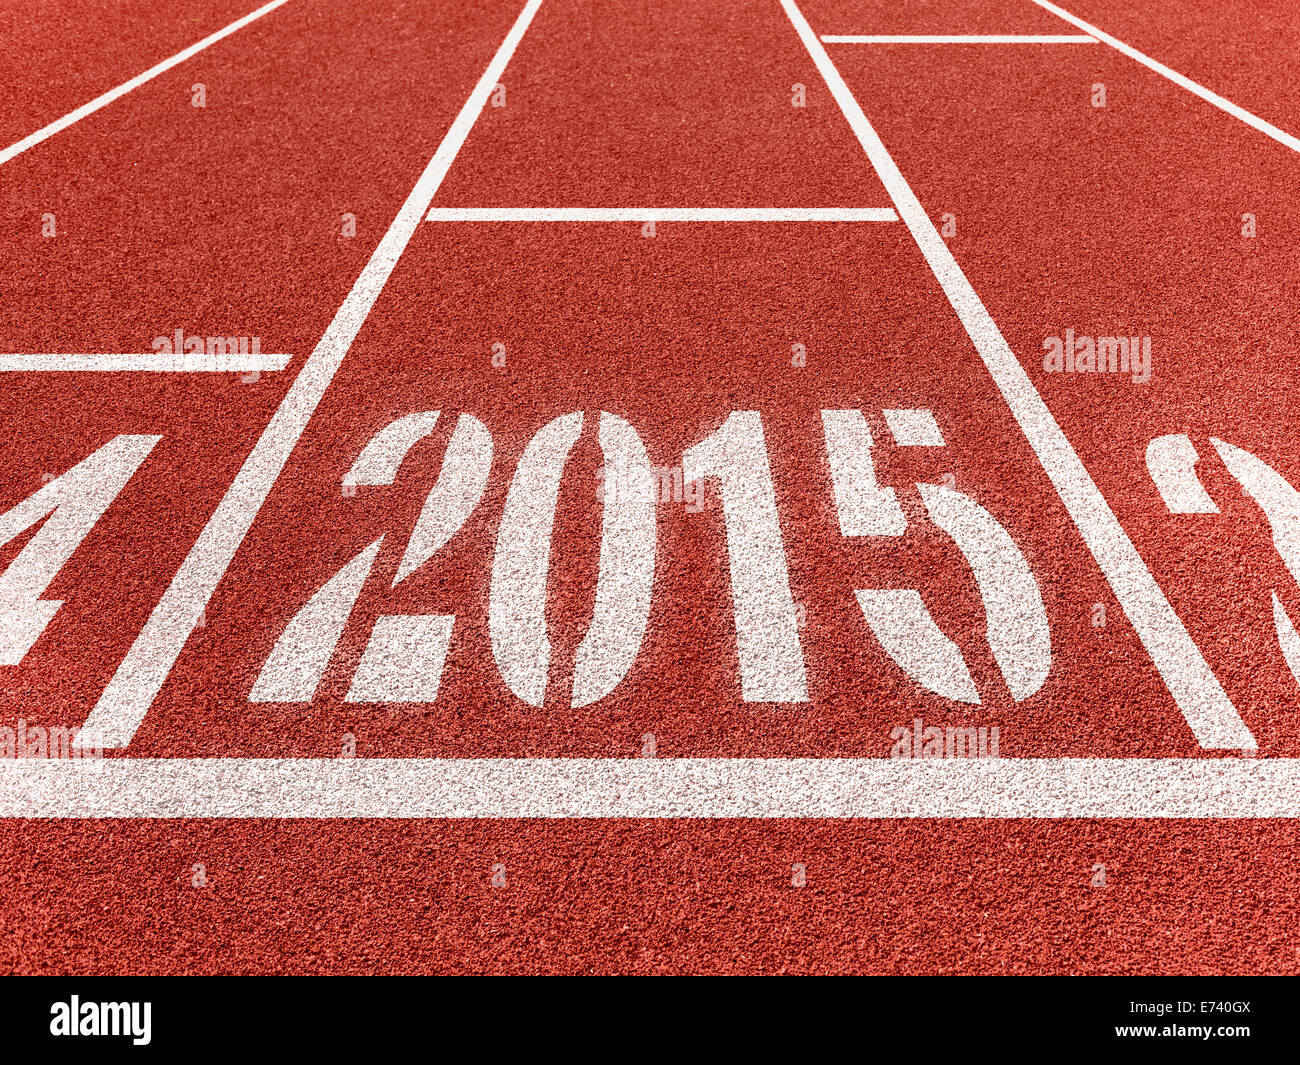 Nouvelle année 2015 diggits sur le sport la voie avec la flèche. Bon début, entreprise en pleine croissance concept. Banque D'Images